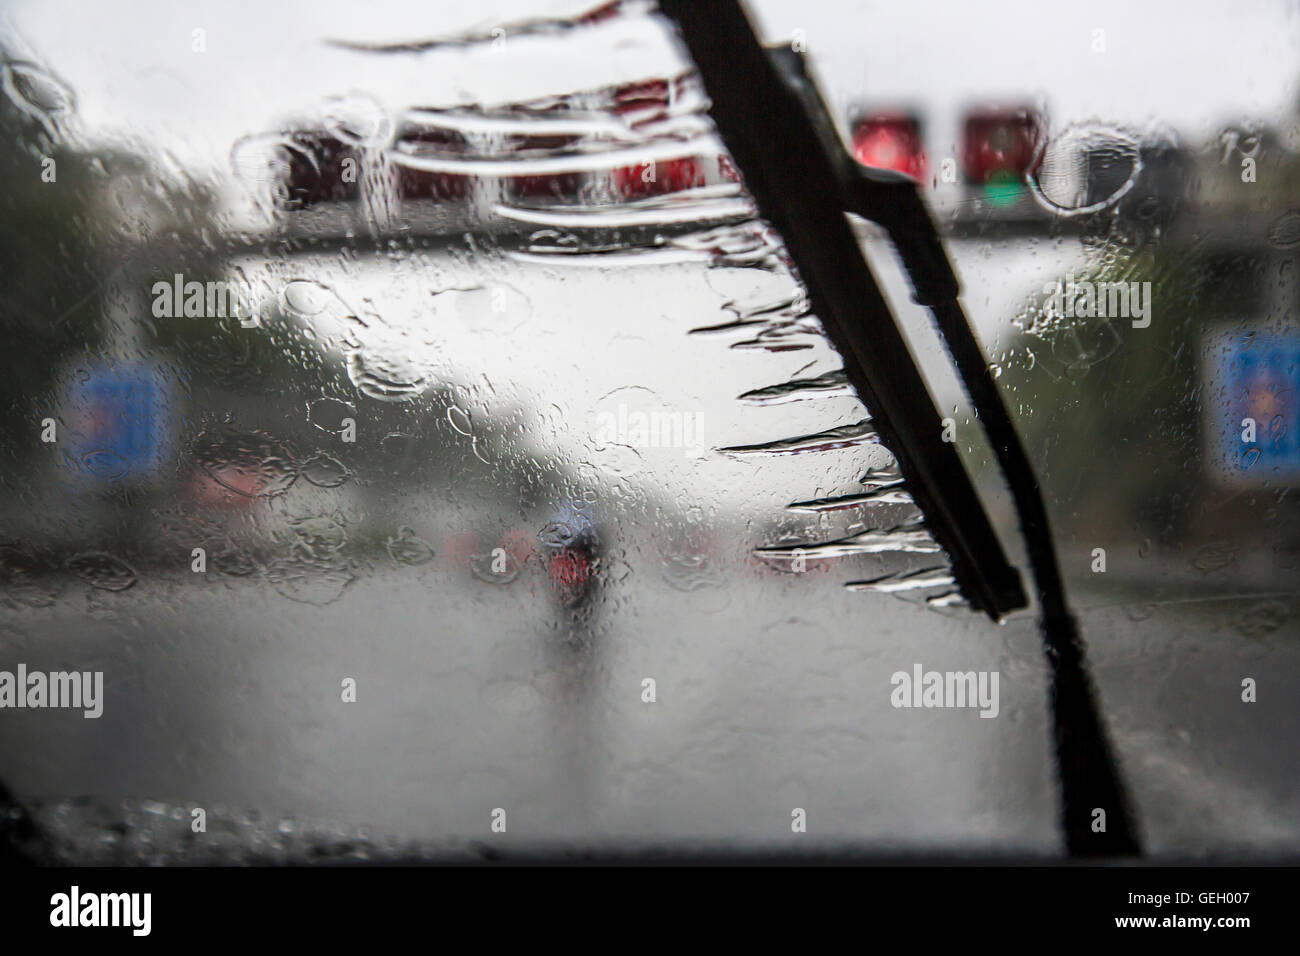 Auto fährt, bei starkem Regen Sturm auf einer Autobahn, Scheibenwischer  auf, viel Wasser auf der Fahrbahn, Deutschland Stockfotografie - Alamy